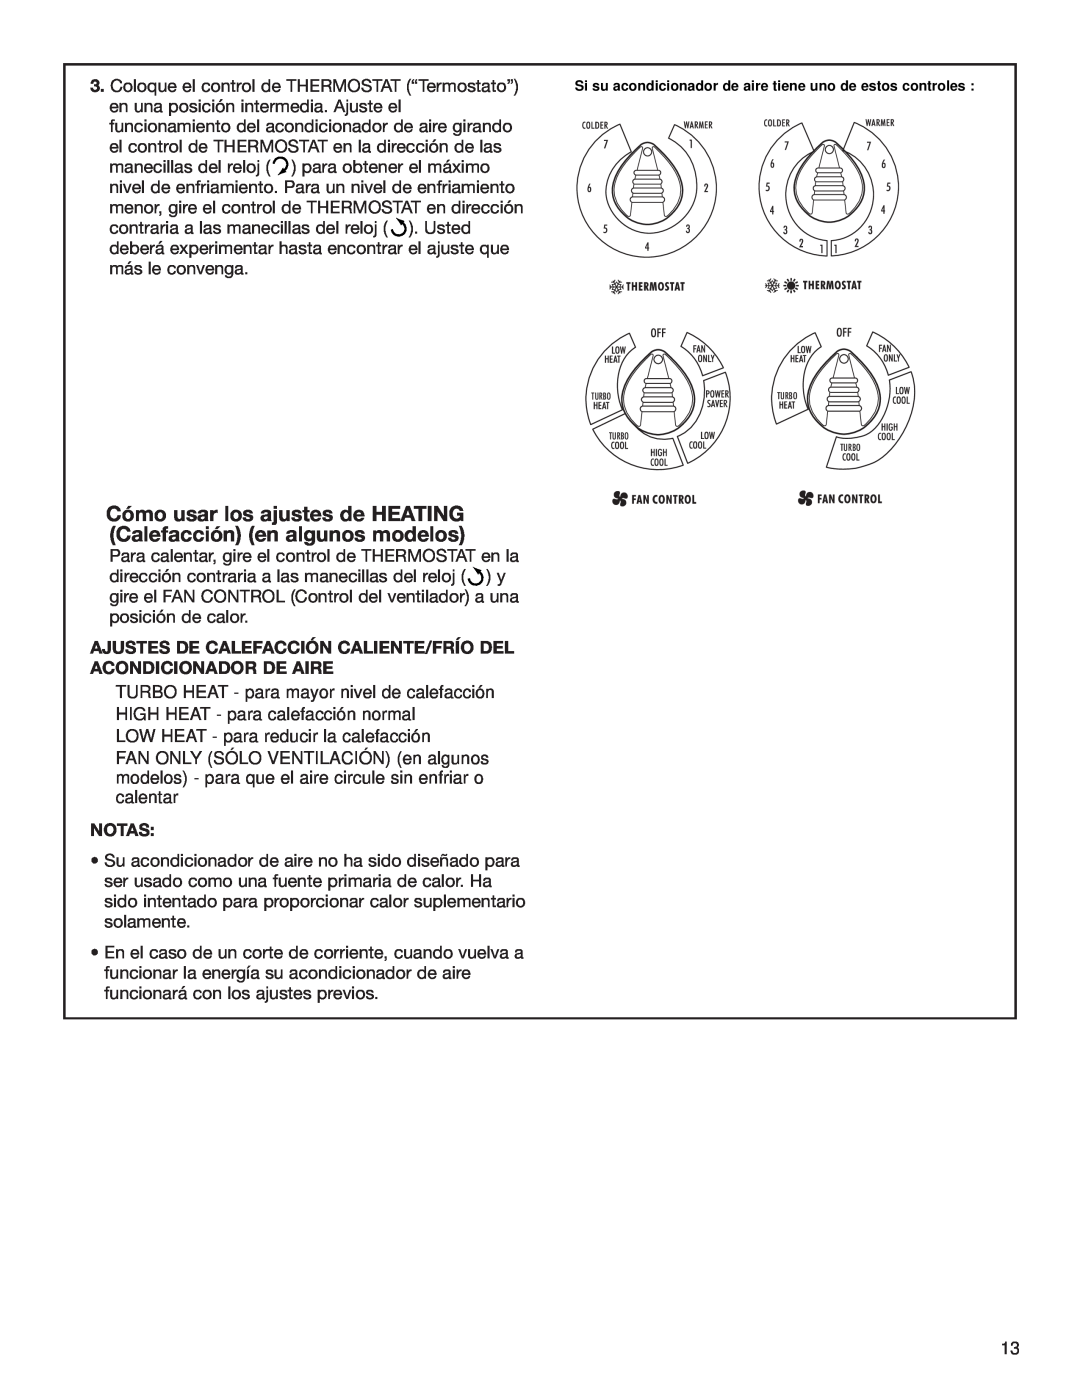 Whirlpool ACE184XL0 manual Cómo usar los ajustes de HEATING Calefacción en algunos modelos, Notas 